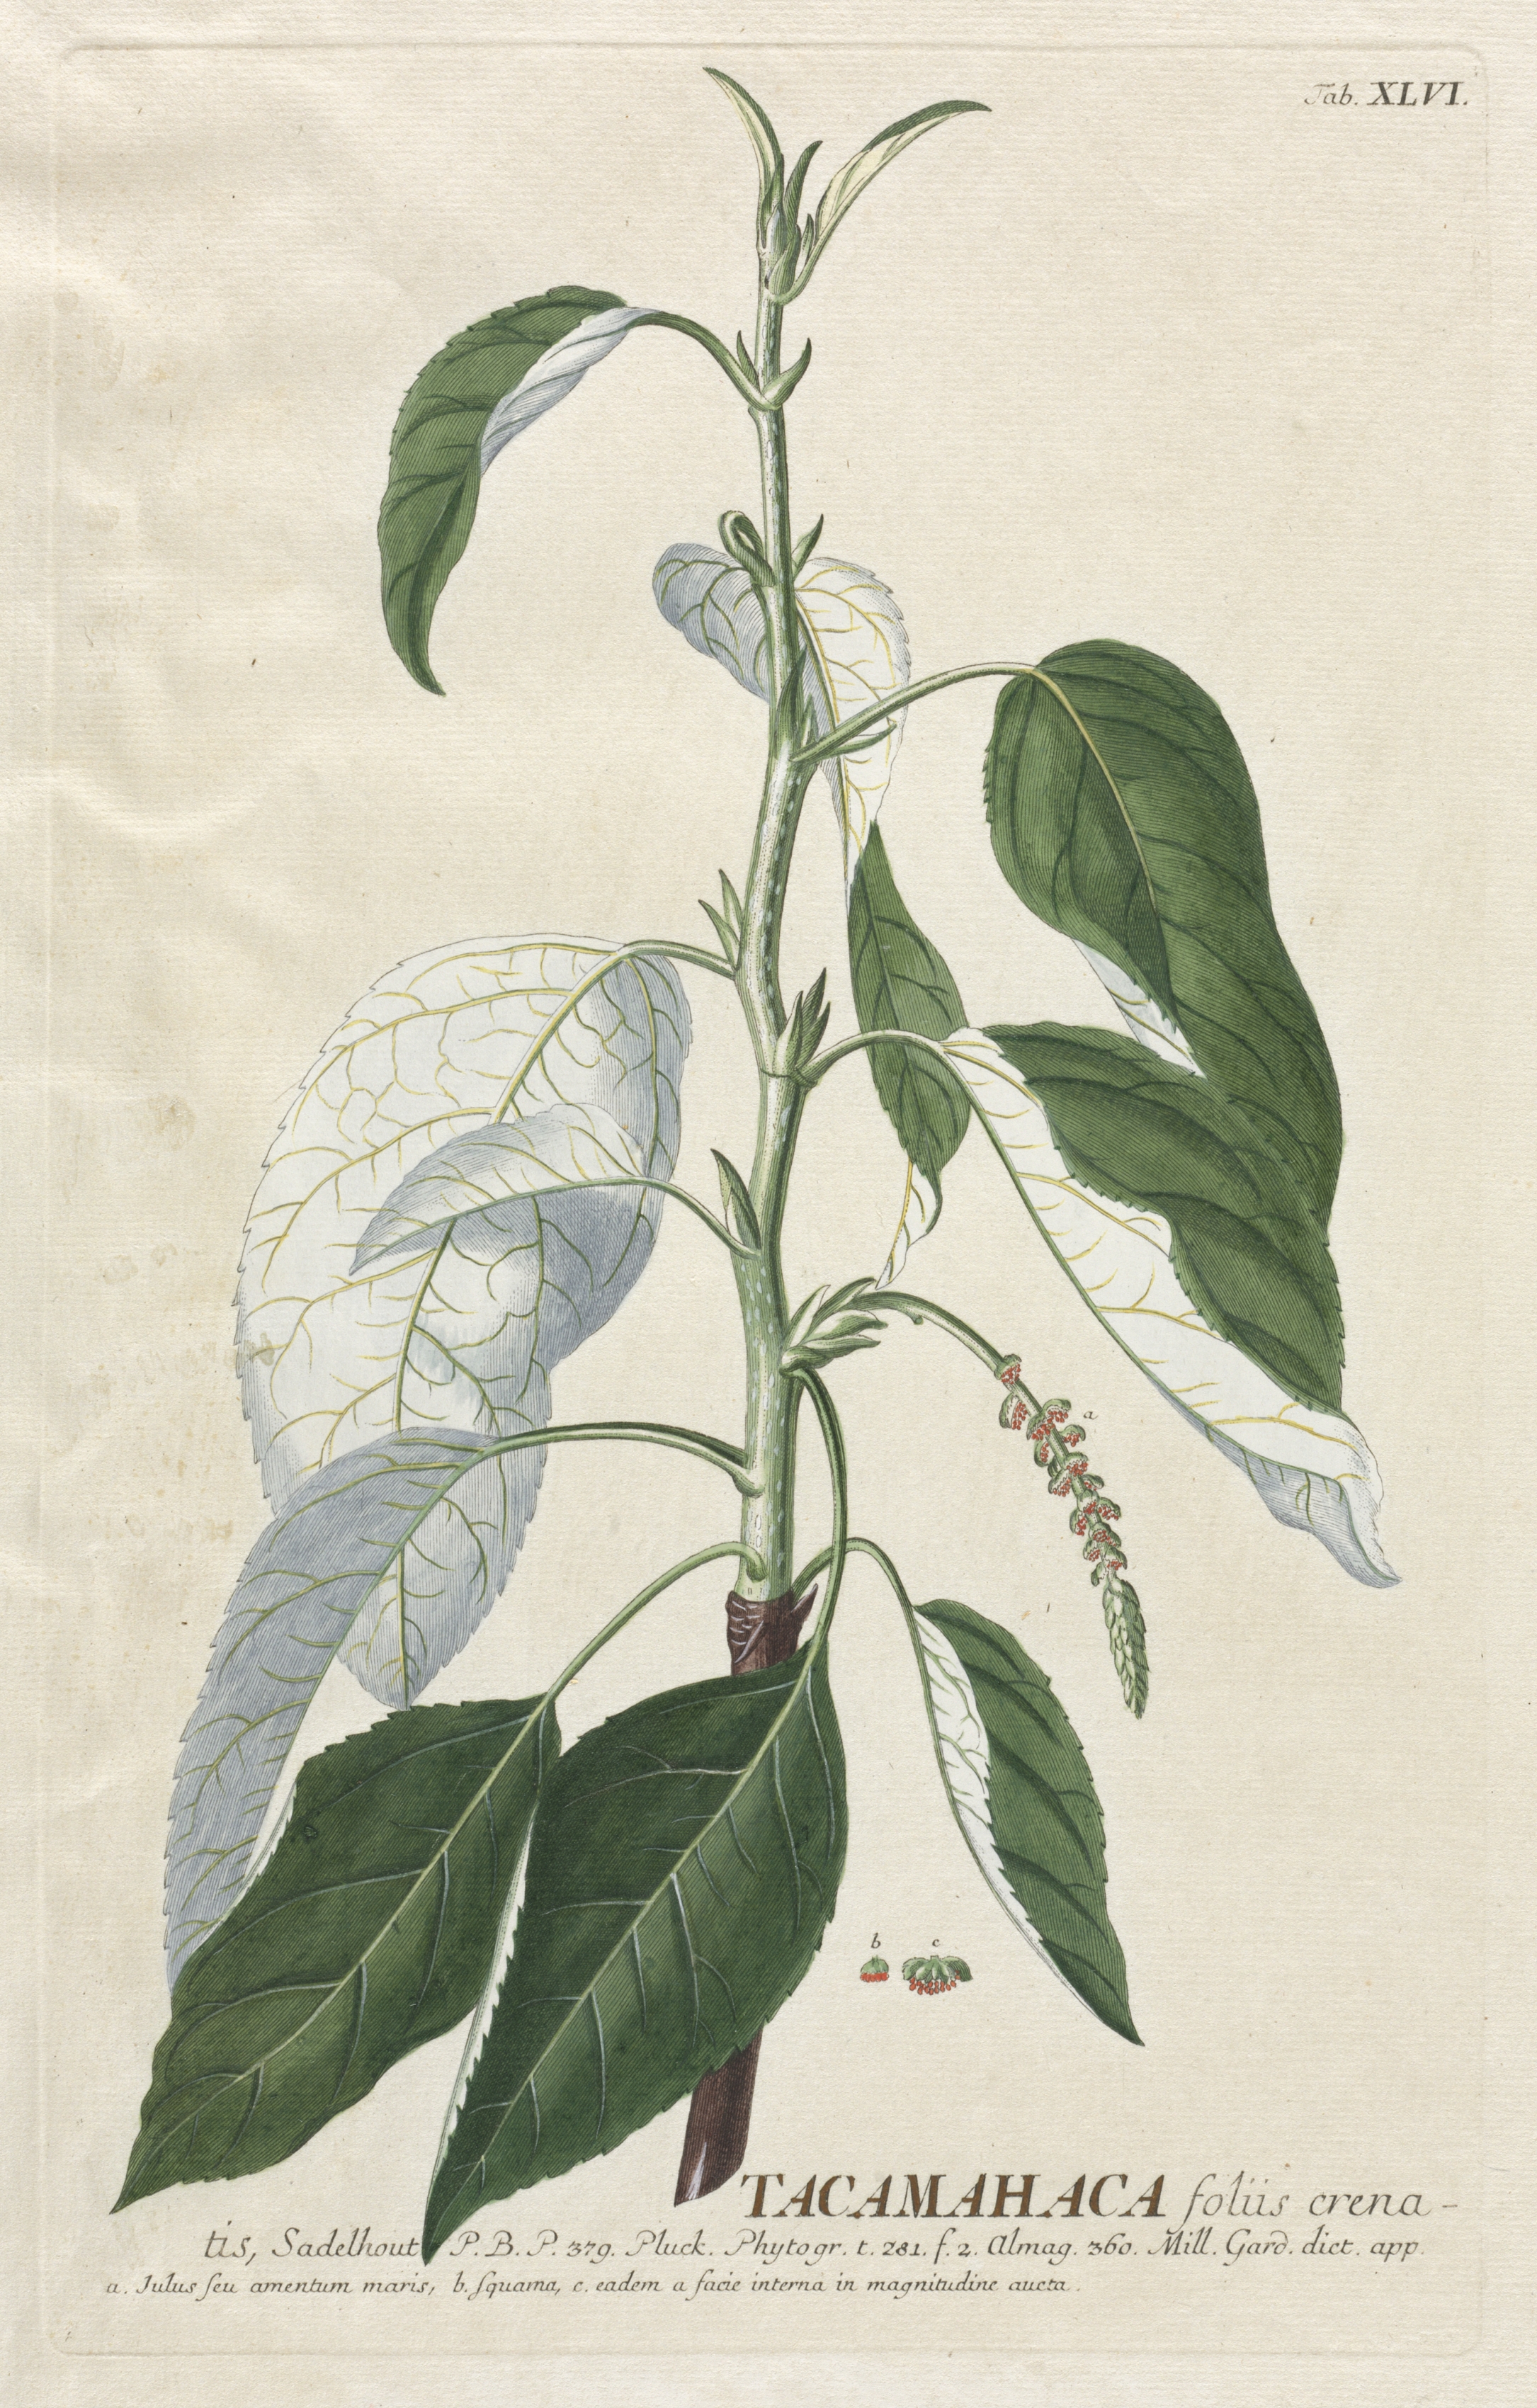 Plantae Selectae:  No. 46 - Tacamahaca